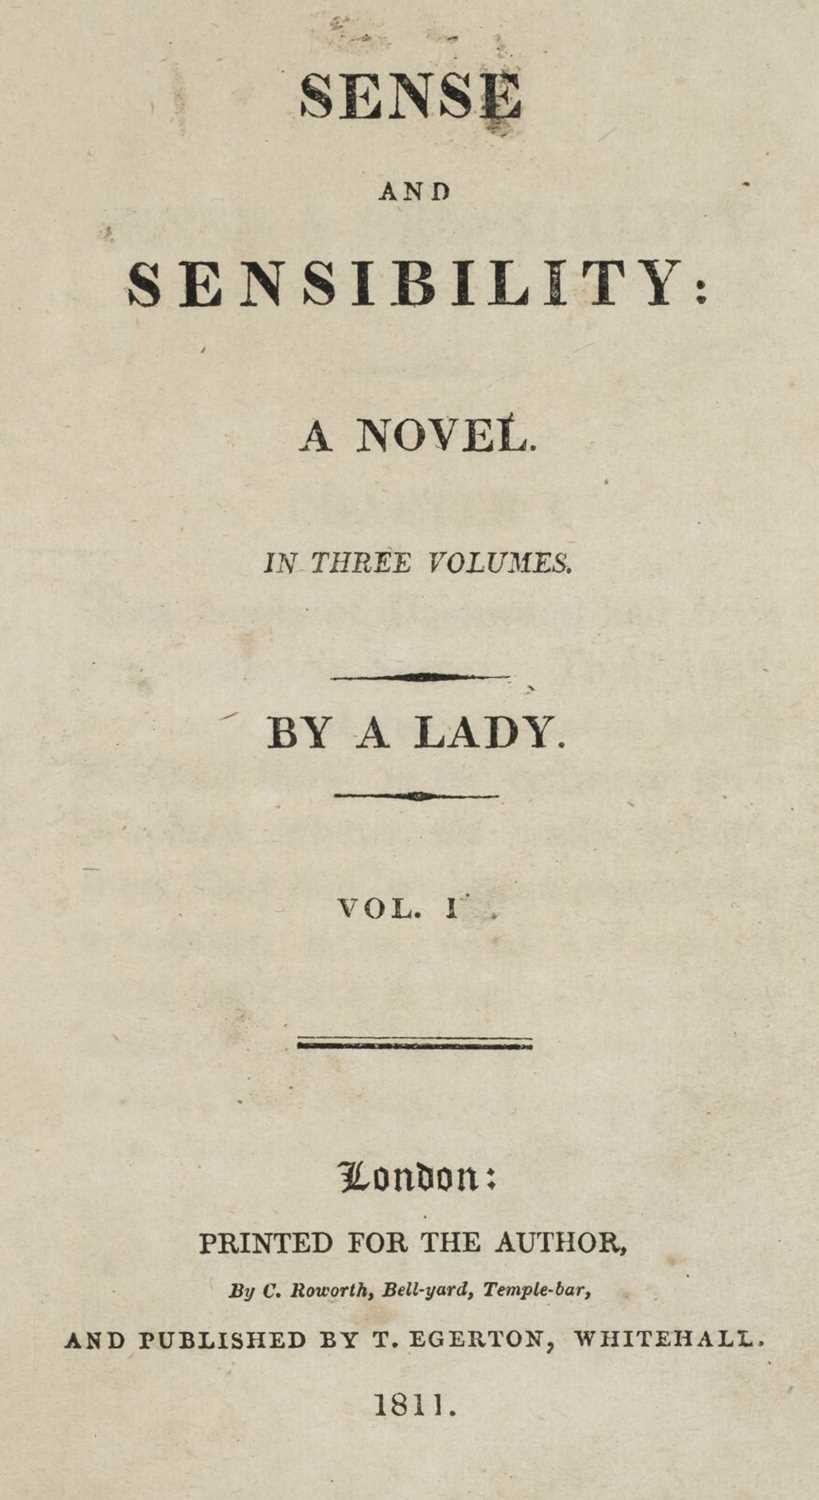 438 - Austen (Jane). Sense and Sensibility vols. I-II & Pride and Prejudice vol. II, 1st editions, 1811-12